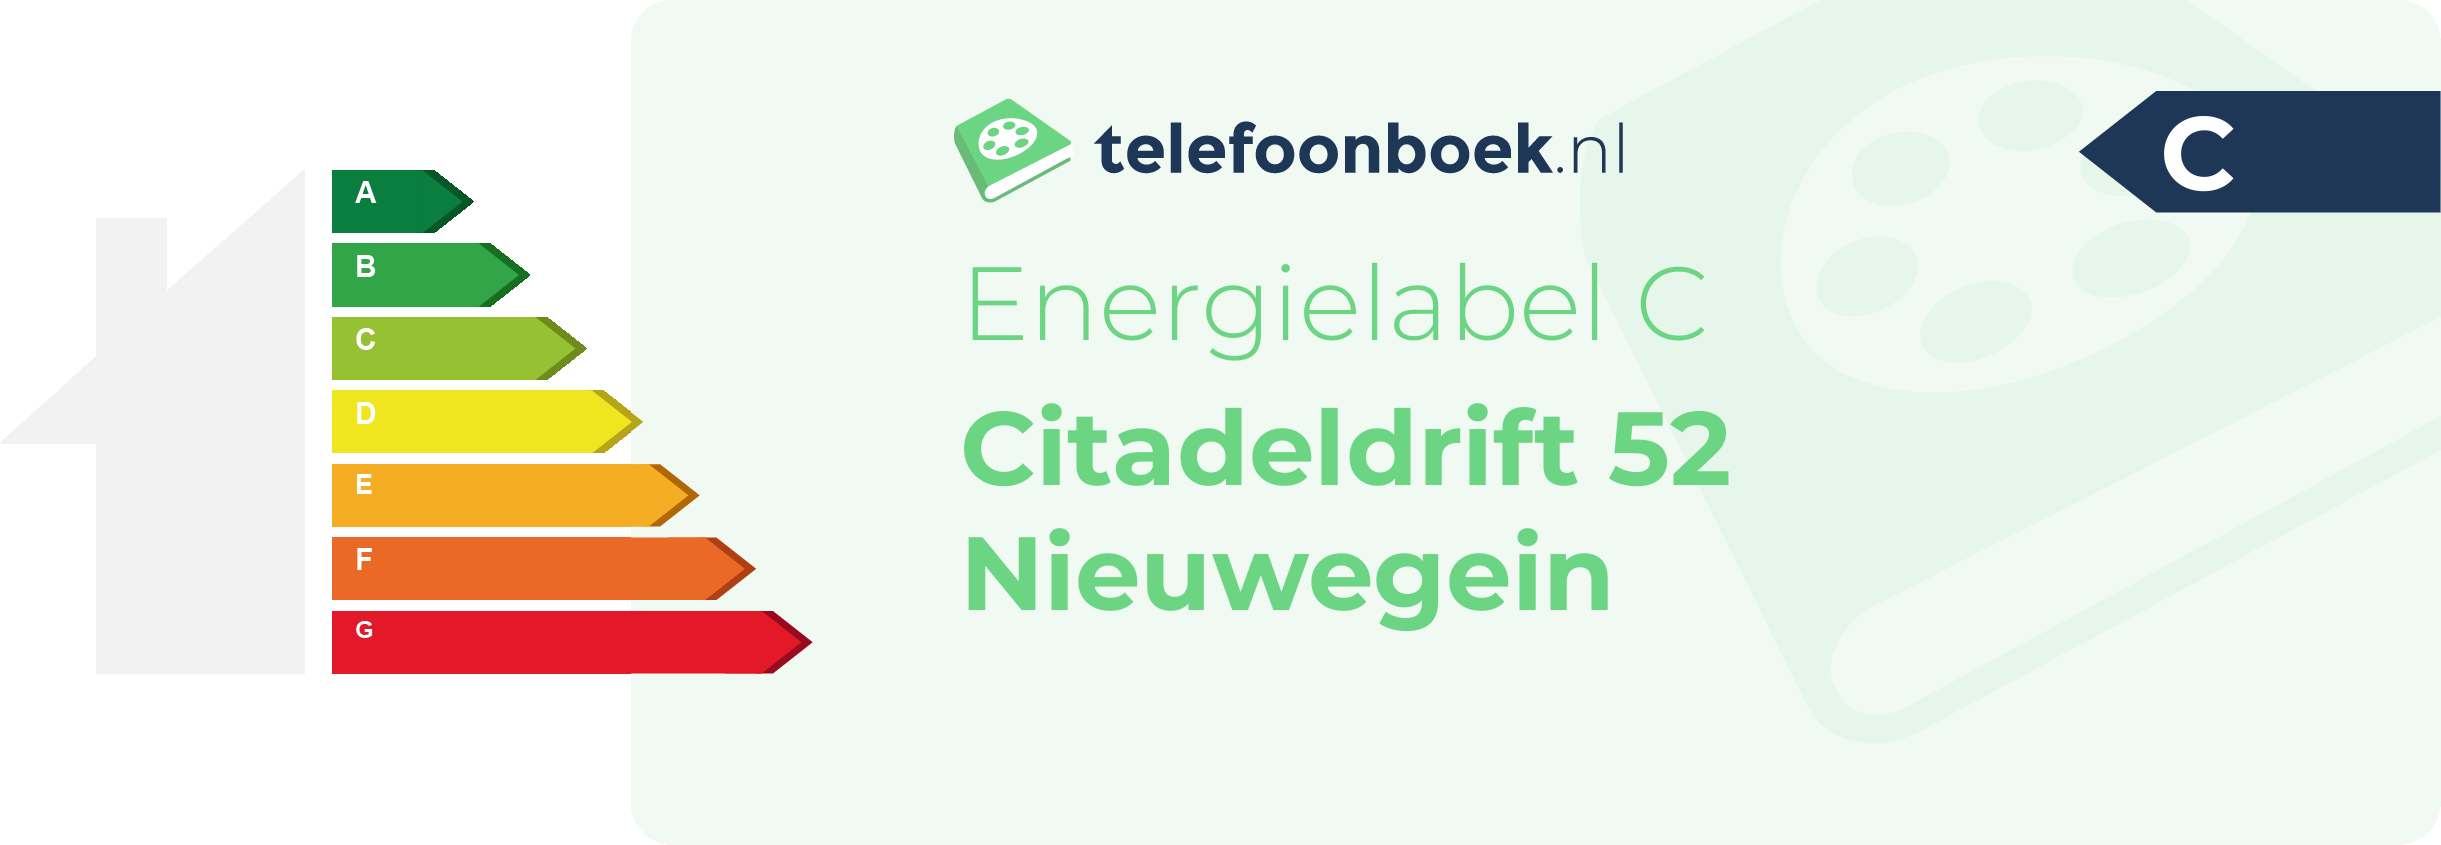 Energielabel Citadeldrift 52 Nieuwegein